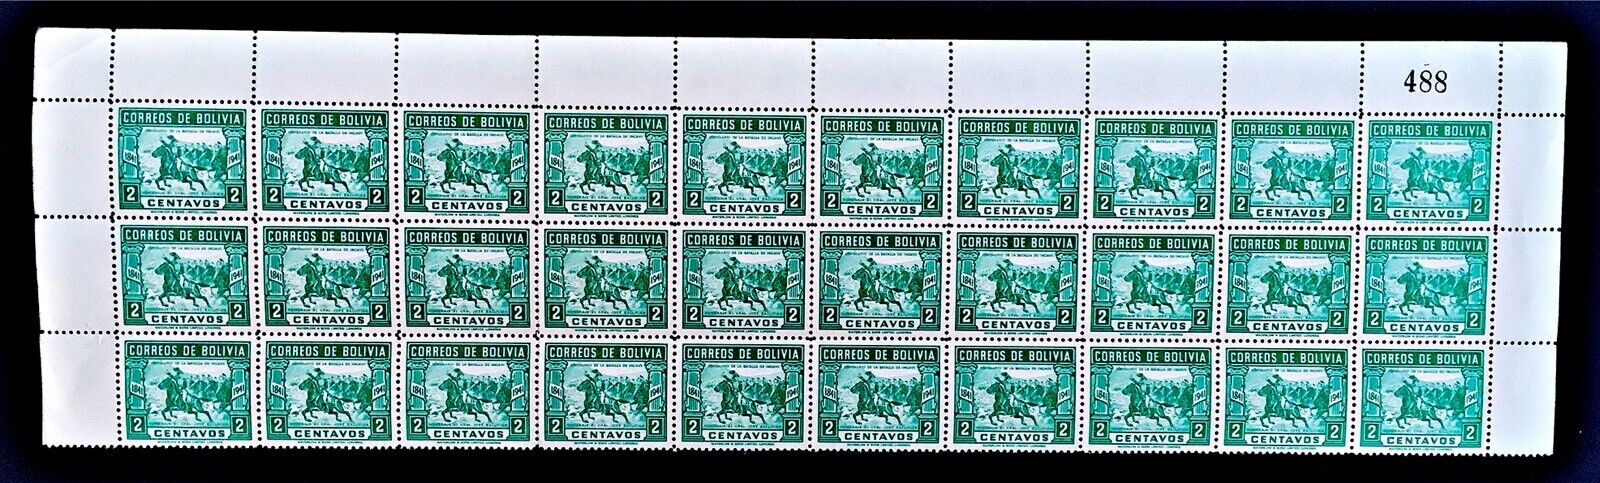 Bolivia 1943 2c Lt Blue Green Partial Sheet x 30 + Sheet Number MNH. Scott 281